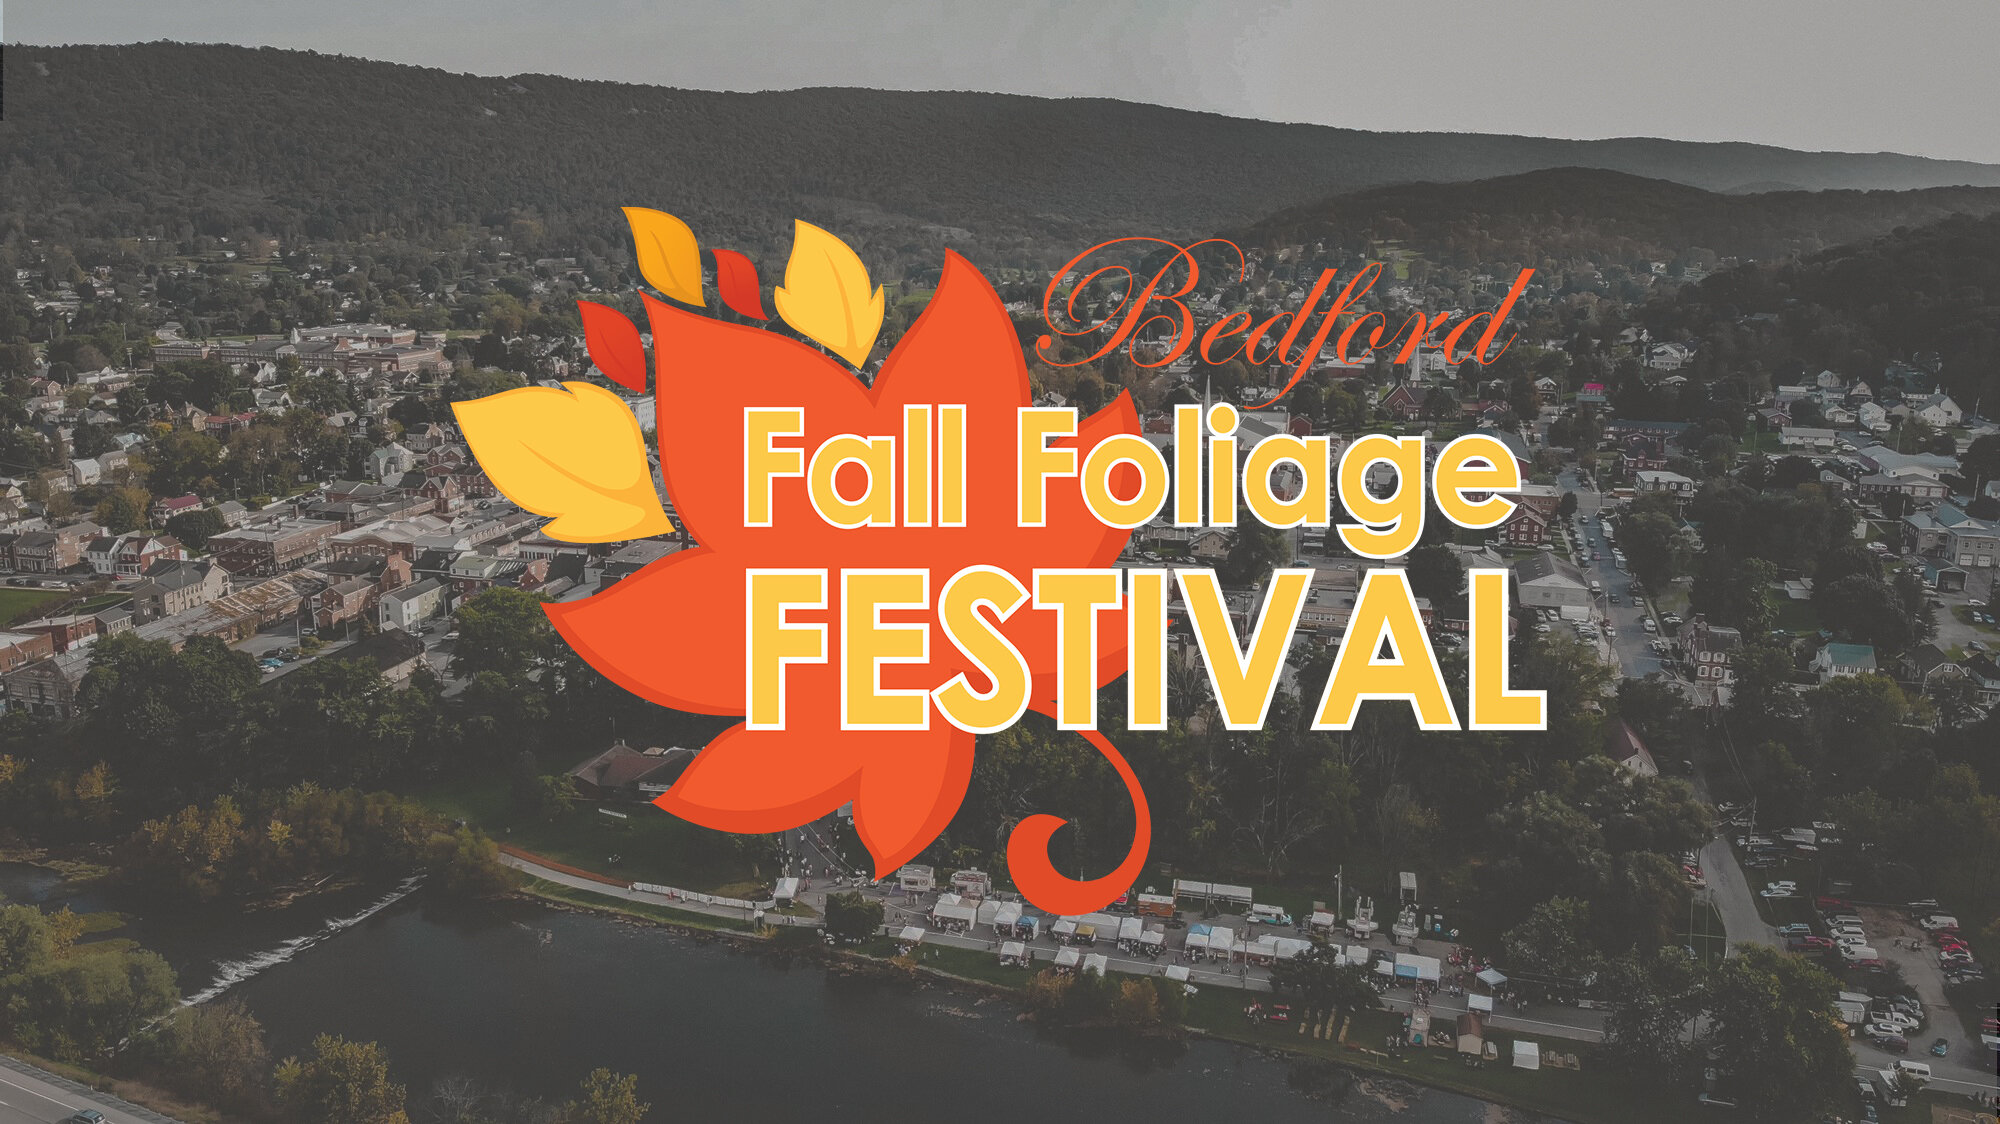 Bedford Fall Foliage Festival